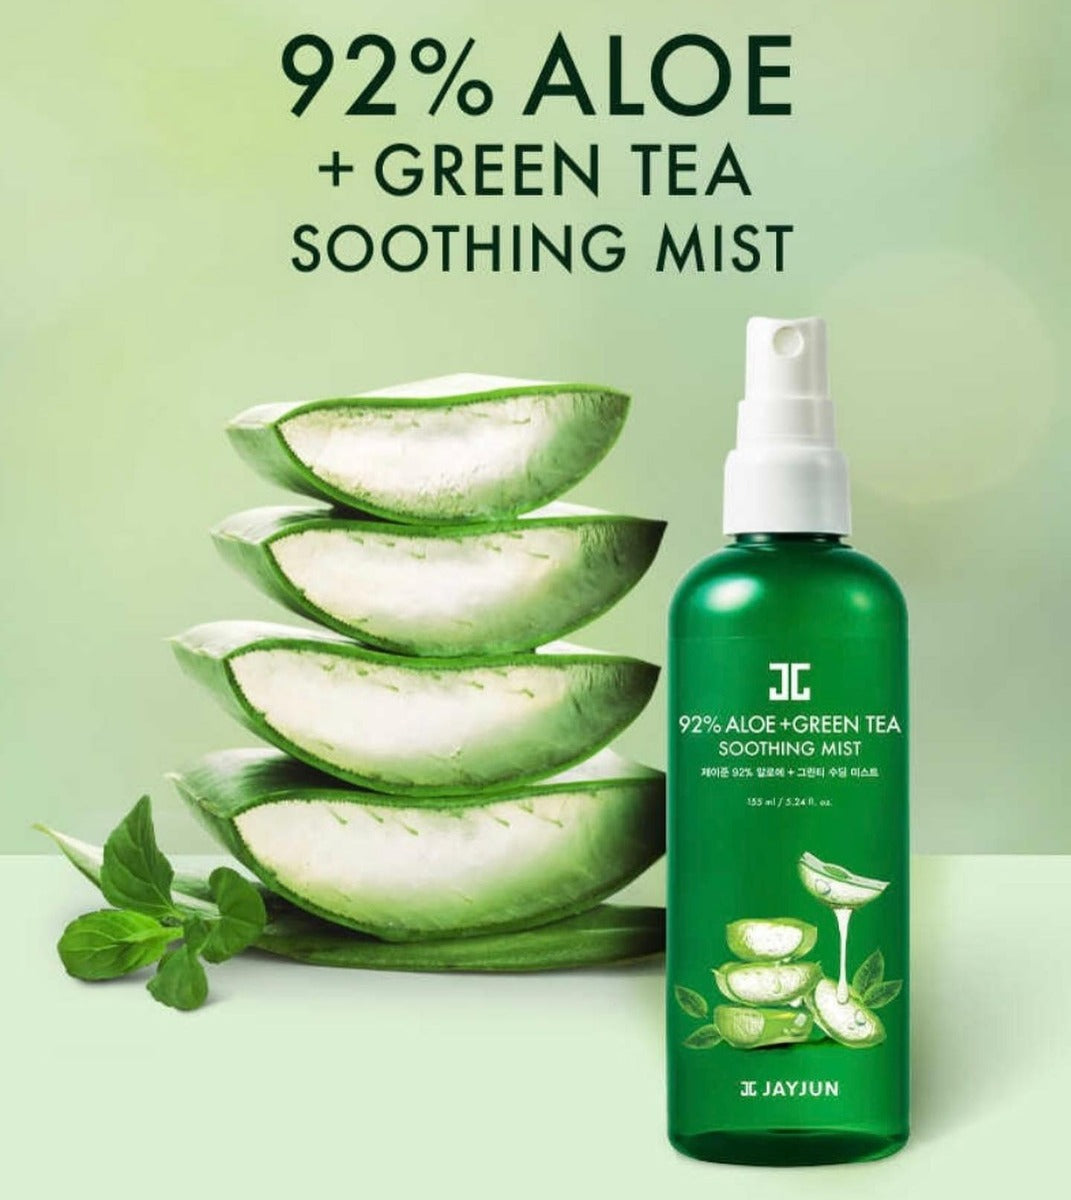 JAYJUN 92% Aloe + Green Tea Soothing Mist مست مرطب بجل الالوفيرا والشاي الاخضر